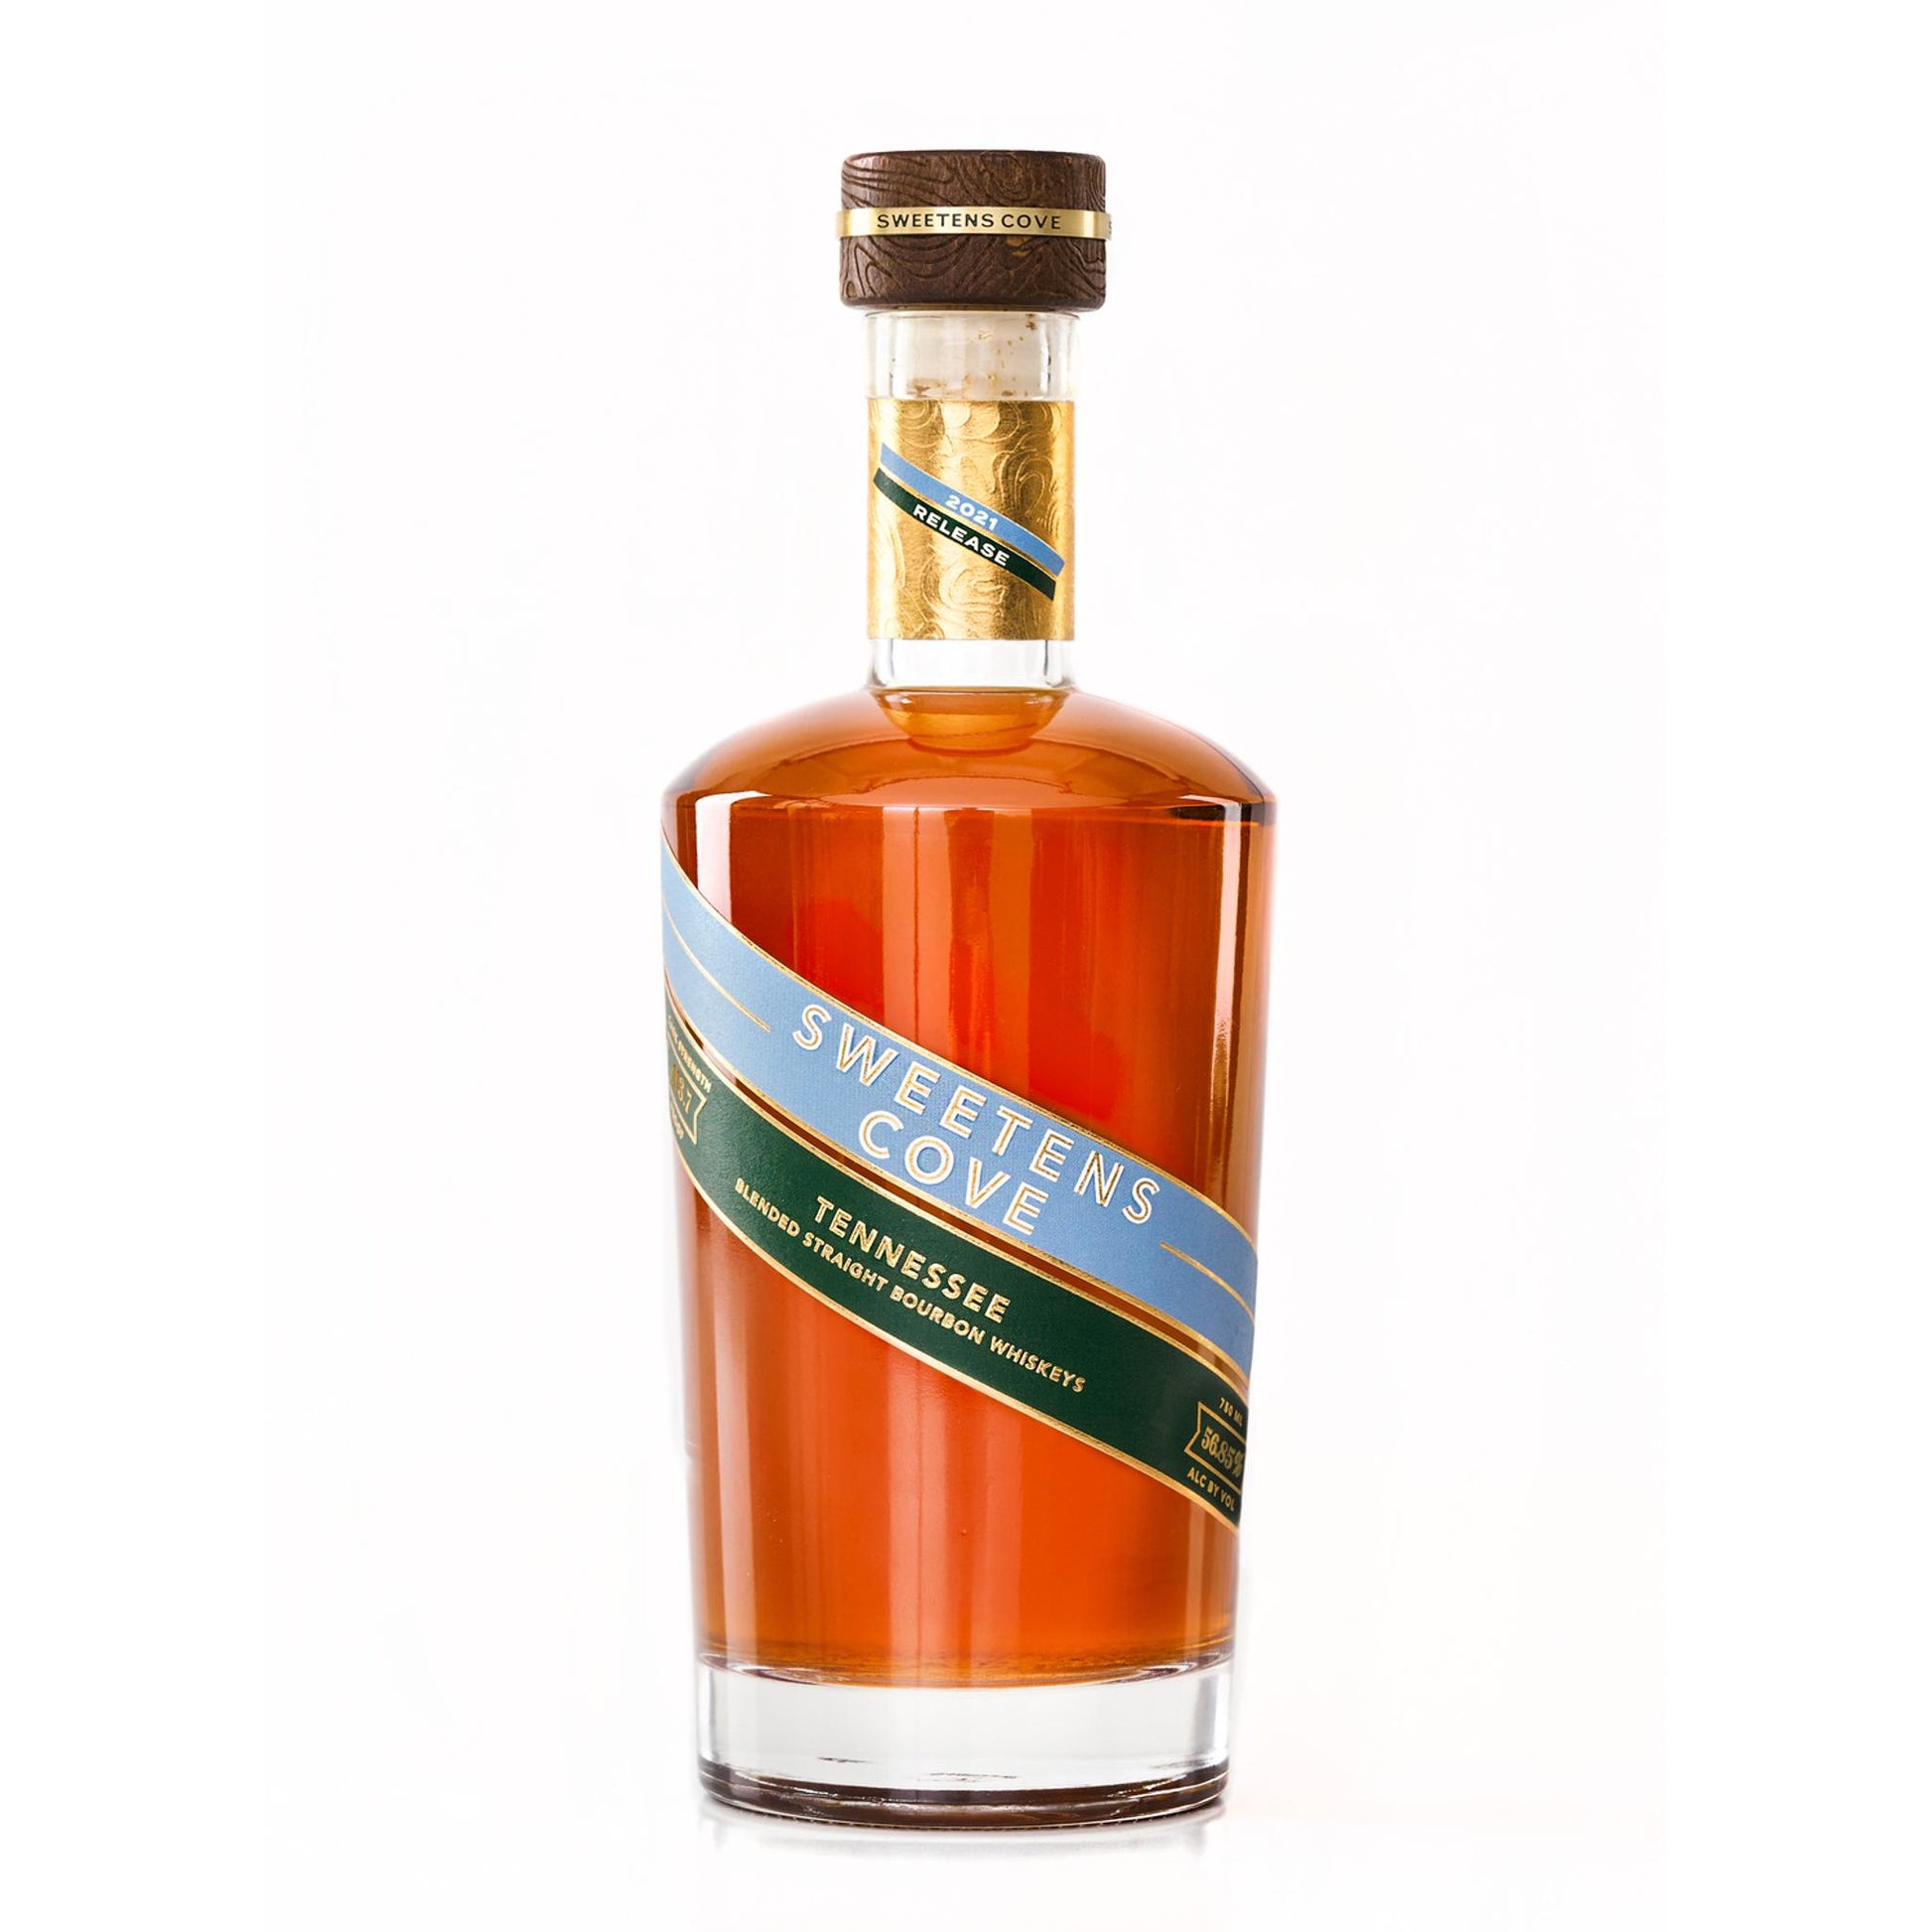 Sweetens Cove Blended Straight Bourbon Whiskies Cask Strength - Liquor Geeks